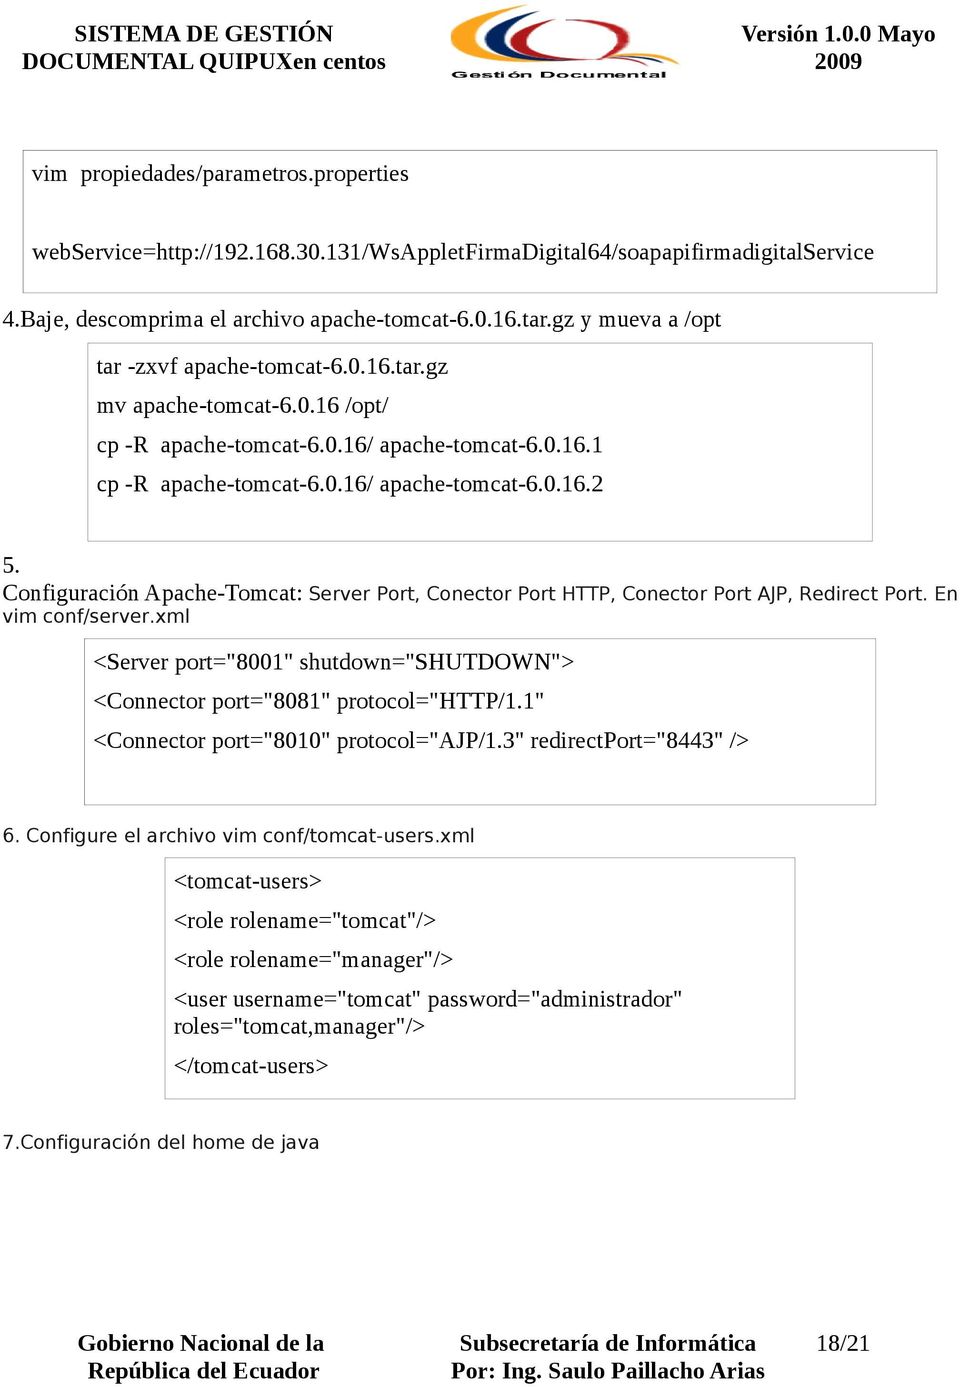 Configuración Apache-Tomcat: Server Port, Conector Port HTTP, Conector Port AJP, Redirect Port. En vim conf/server.xml <Server port="8001" shutdown="shutdown"> <Connector port="8081" protocol="http/1.